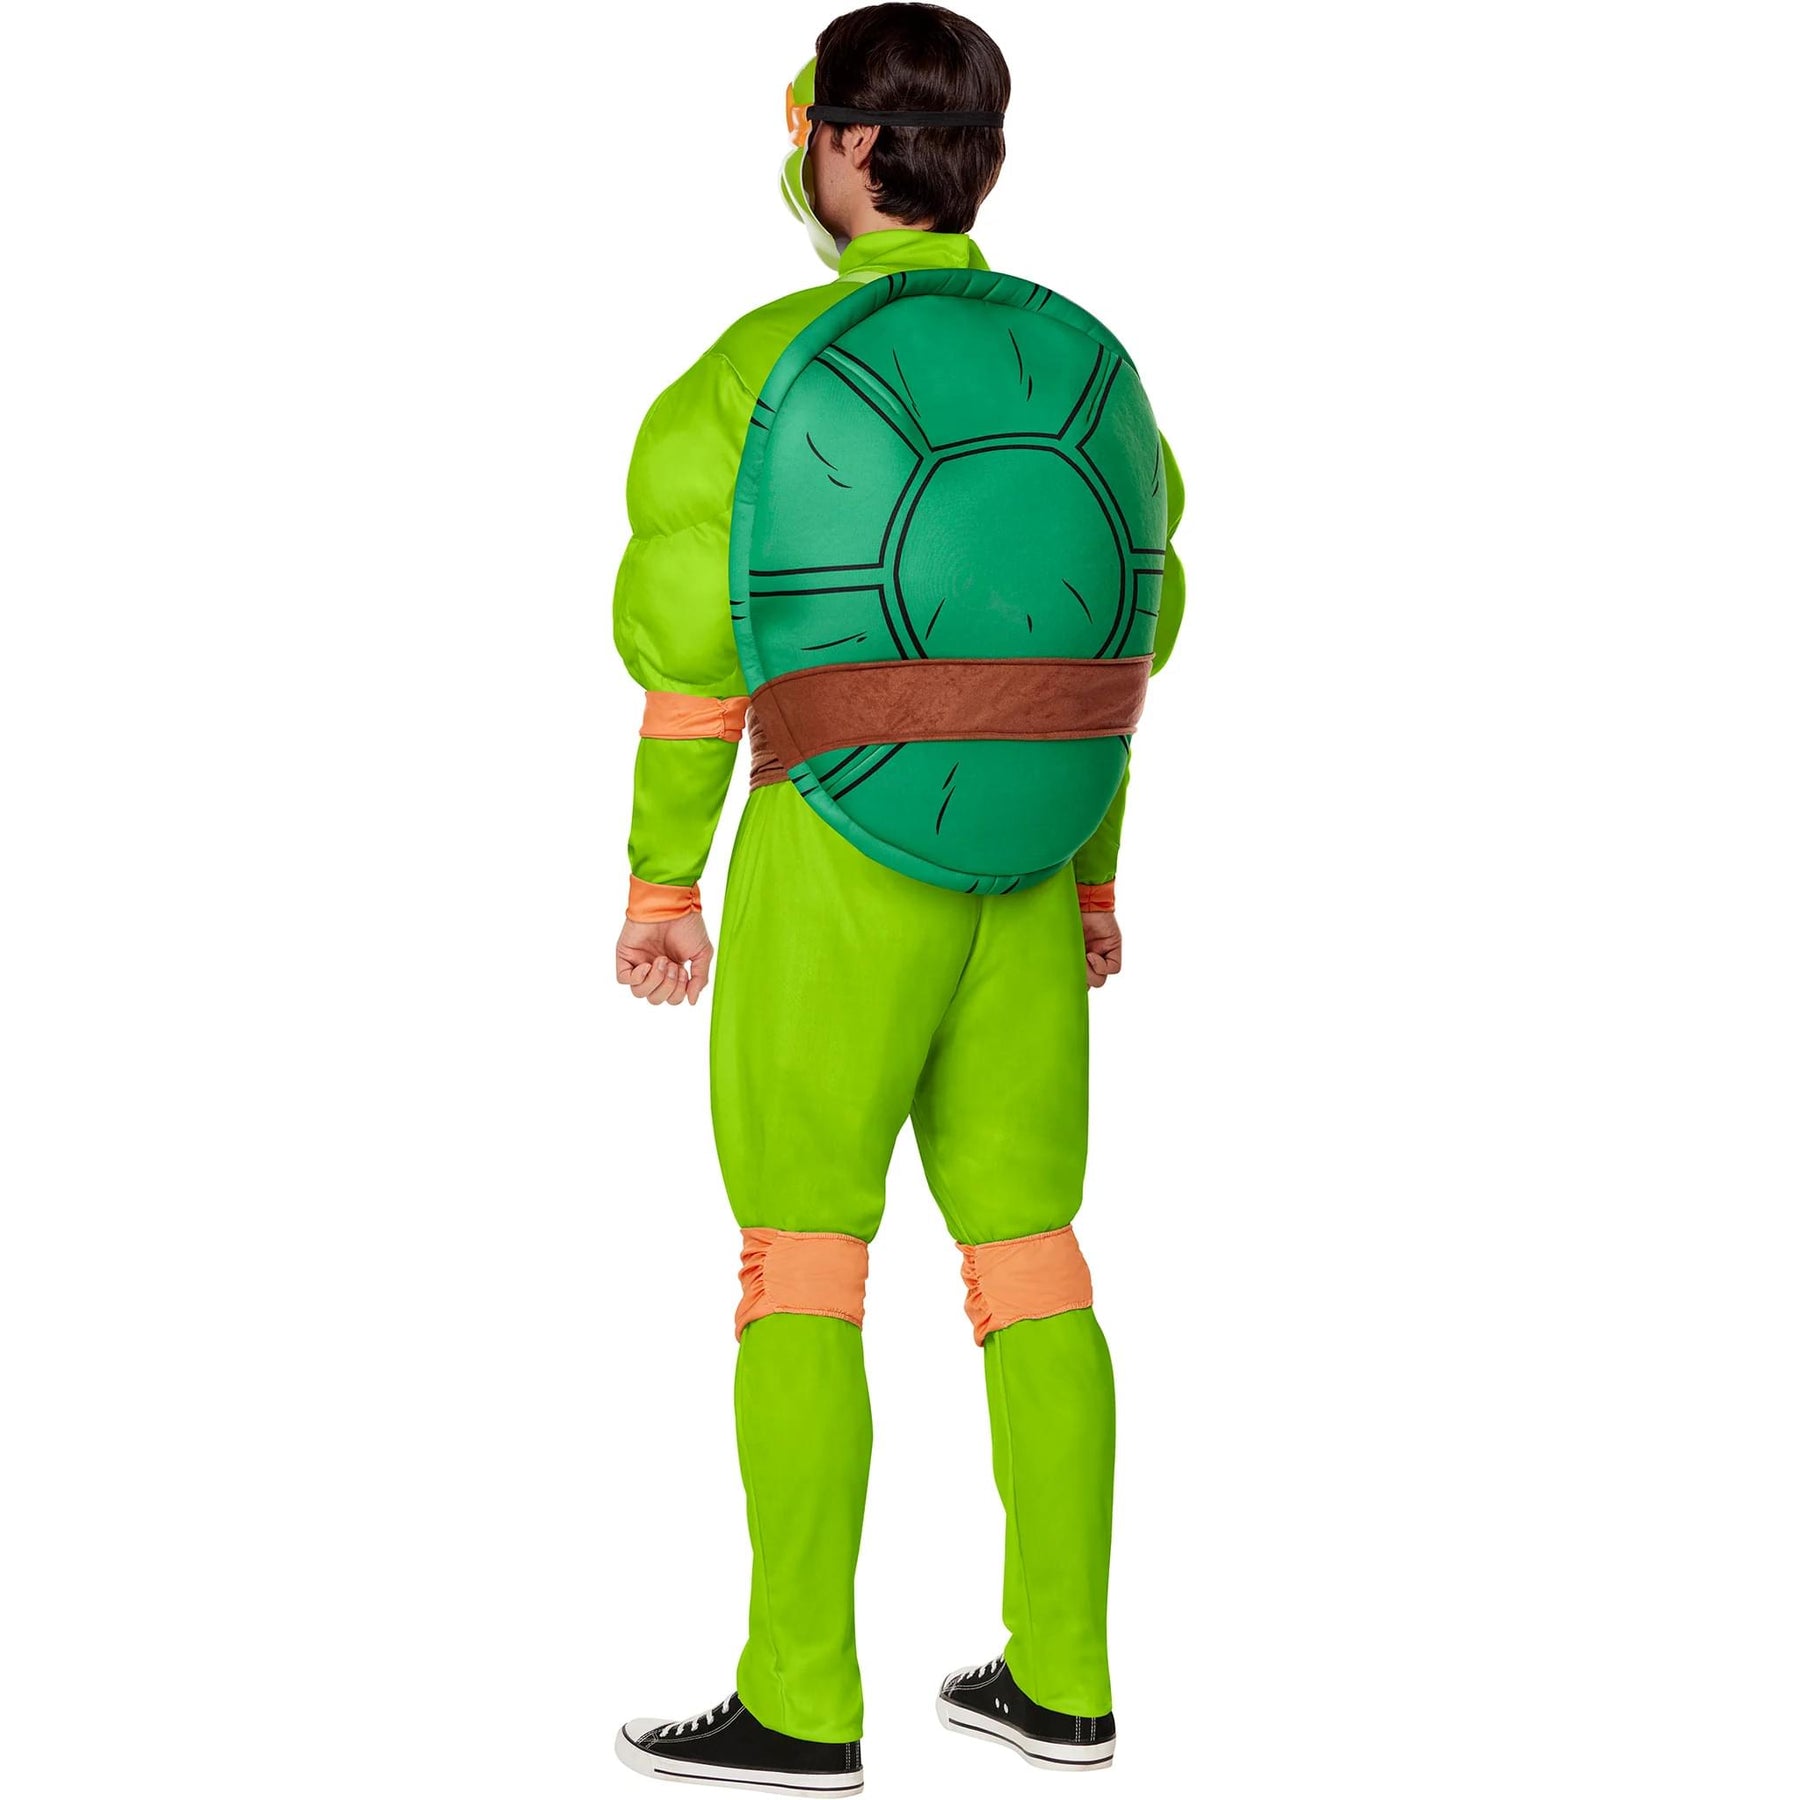 TMNT Michelangelo Classic Deluxe Adult Costume